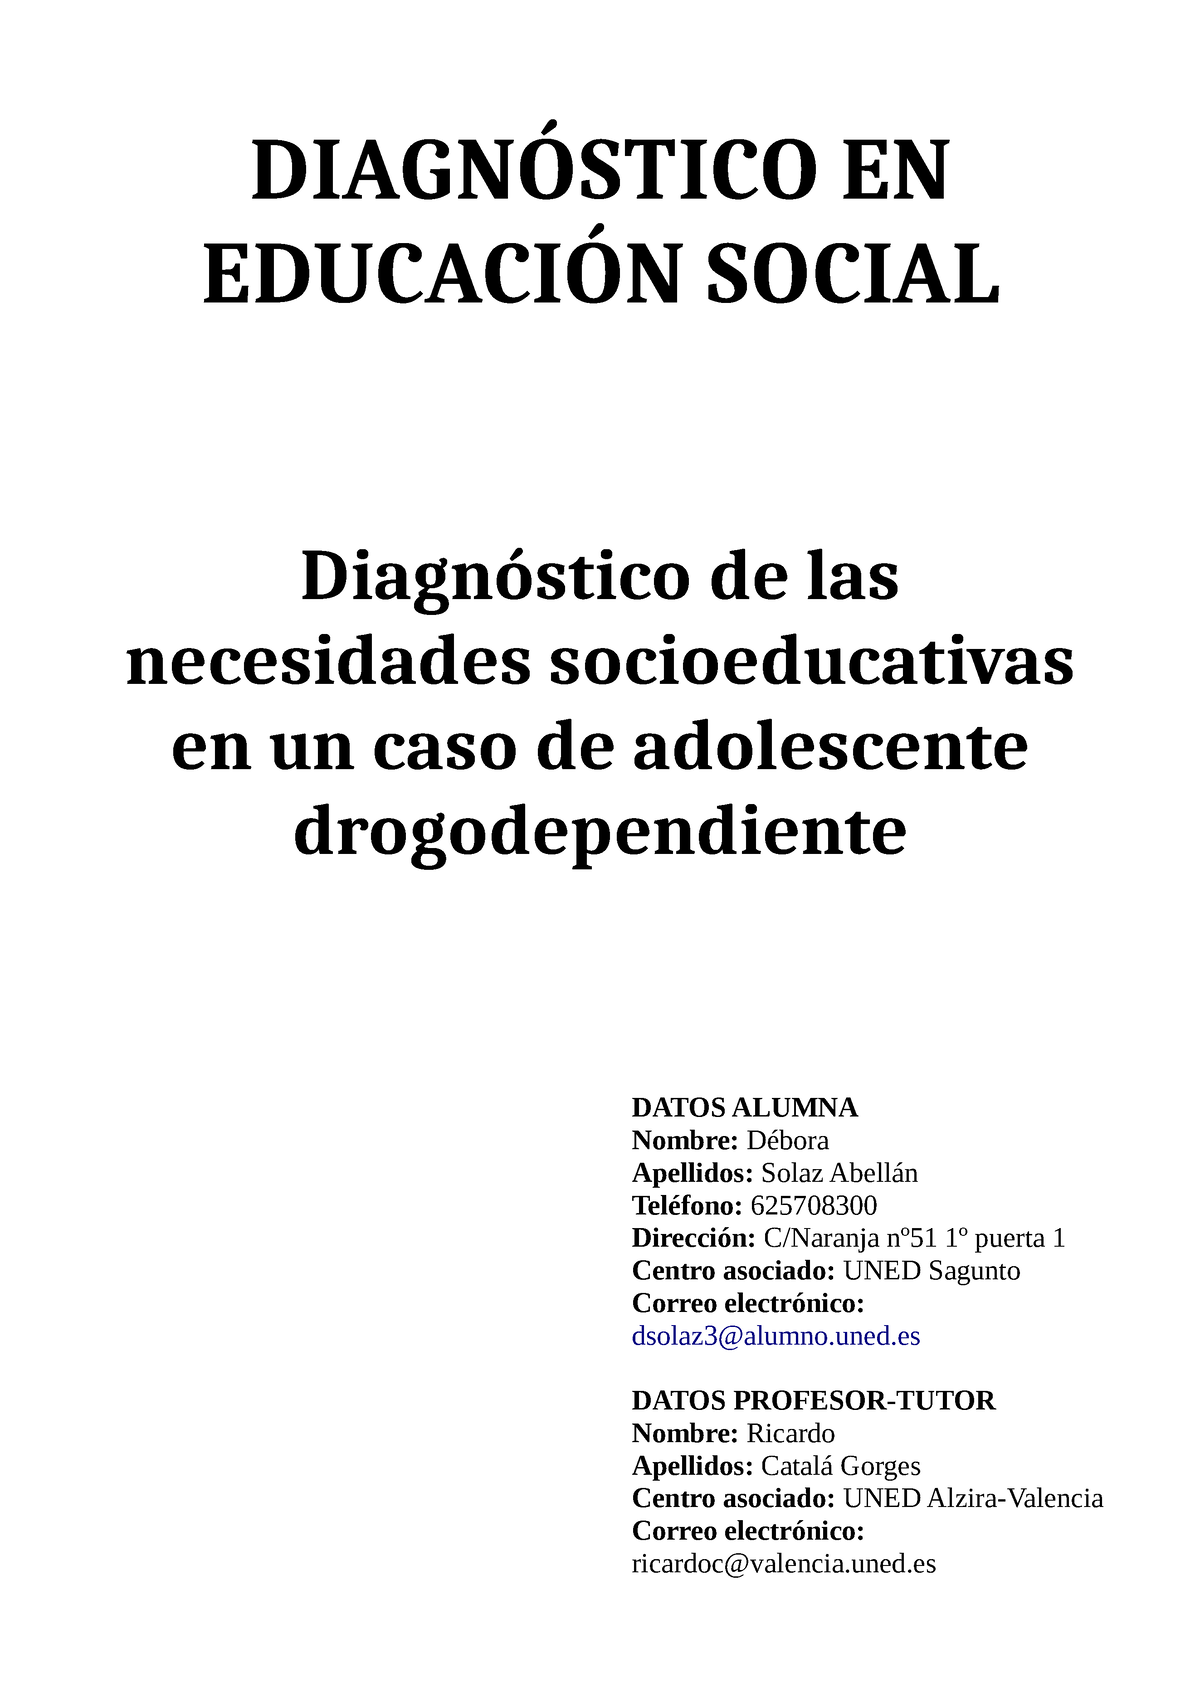 PEC Solaz Abellán - DIAGNÓSTICO EN EDUCACIÓN SOCIAL Diagnóstico de las